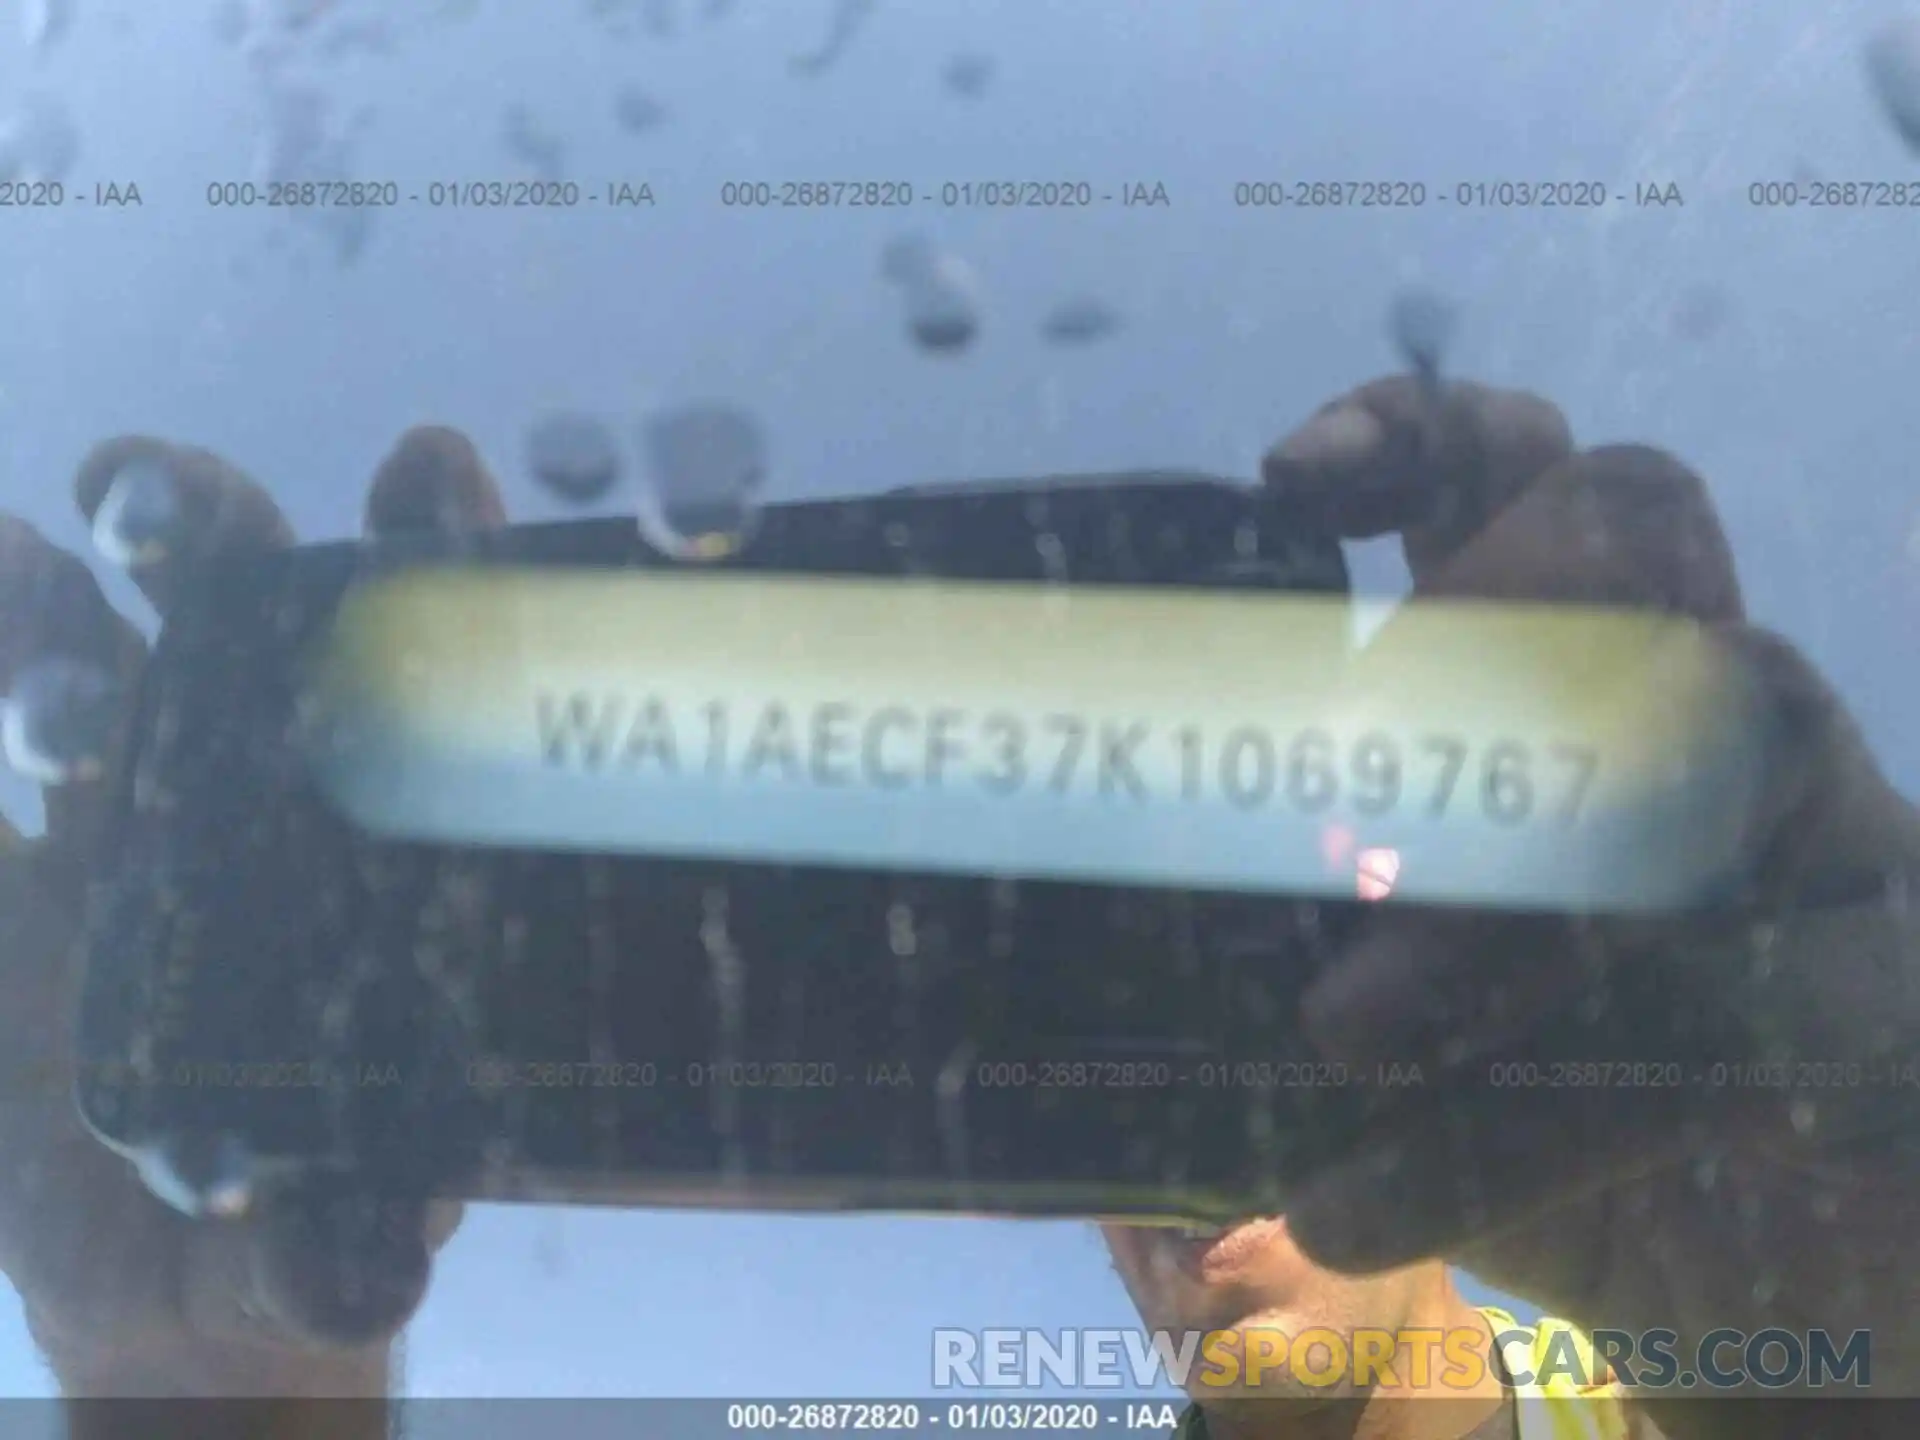 9 Photograph of a damaged car WA1AECF37K1069767 AUDI Q3 2019